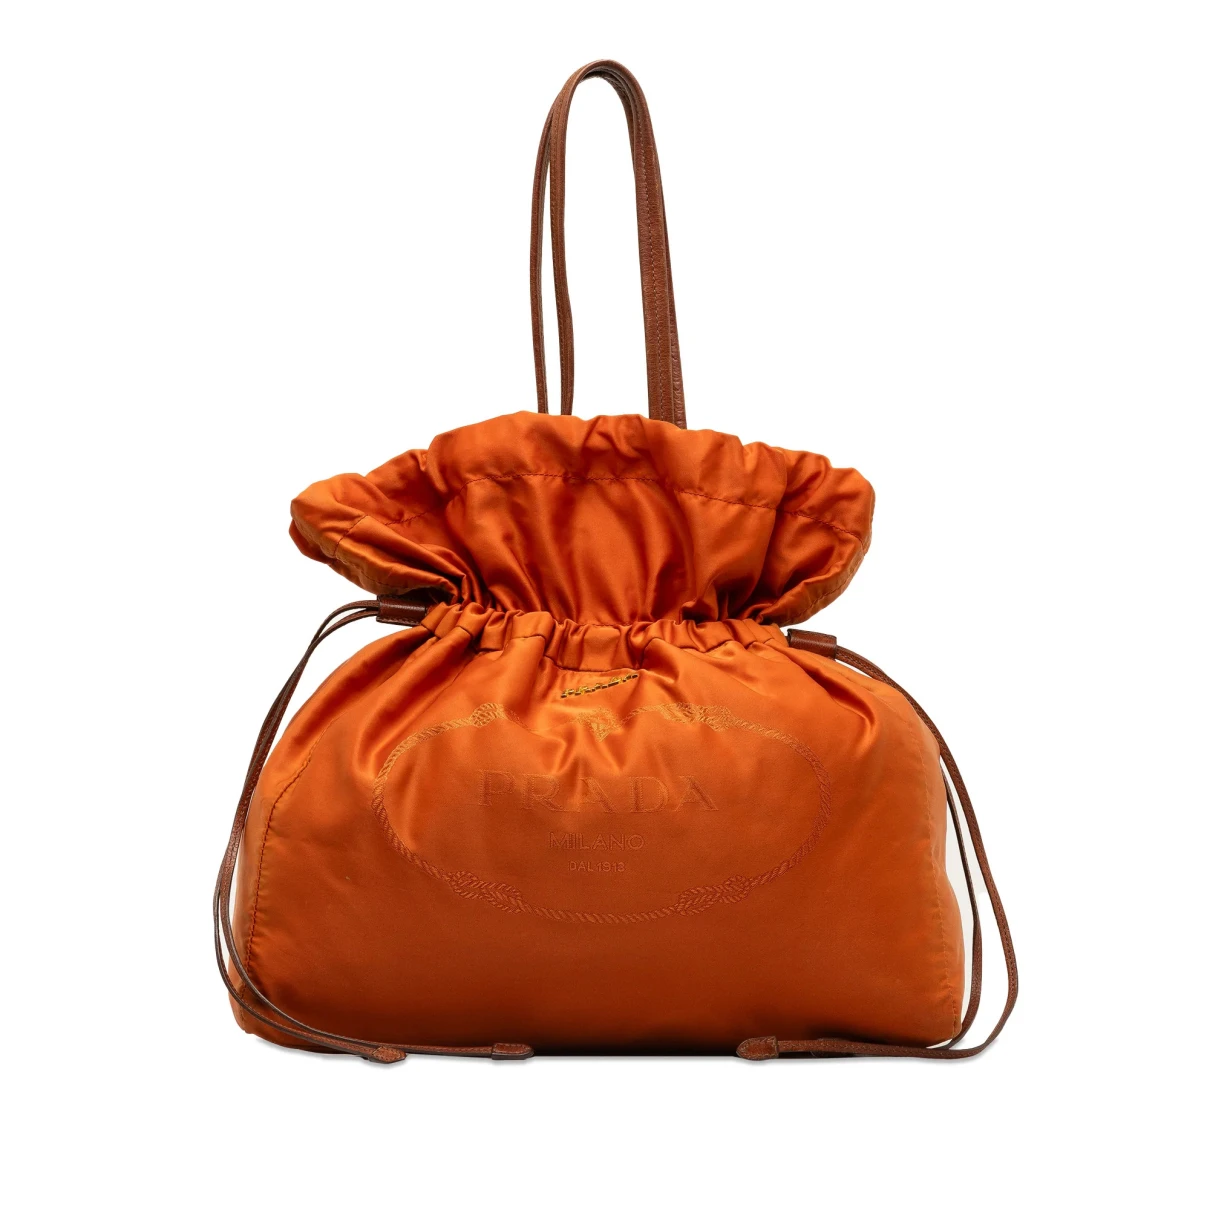 Pre-owned Prada Leather Tote In Orange